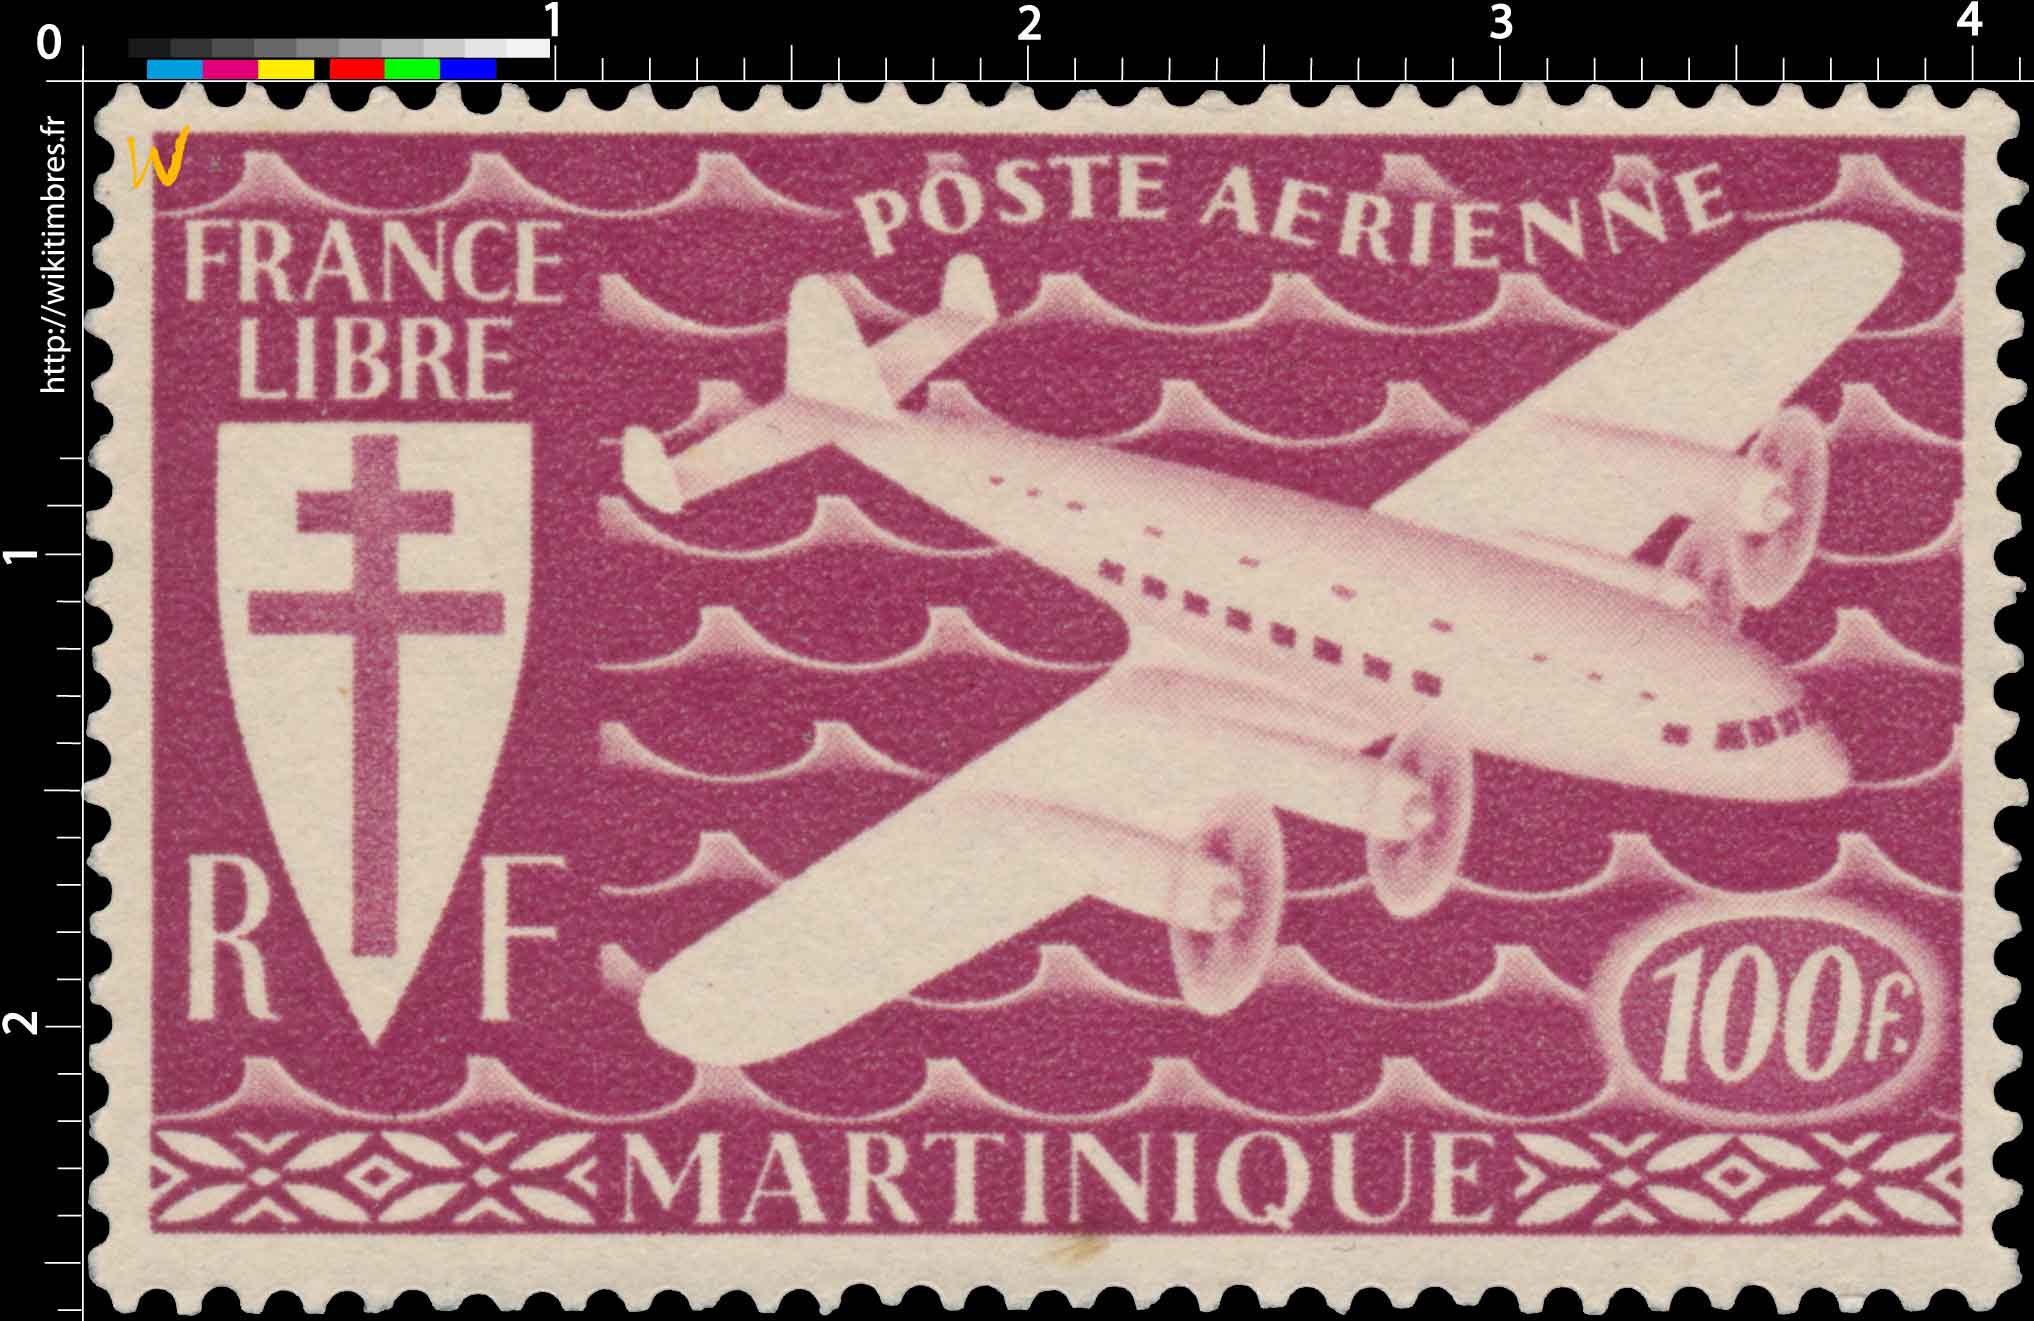 Martinique - Série de Londres - Avion